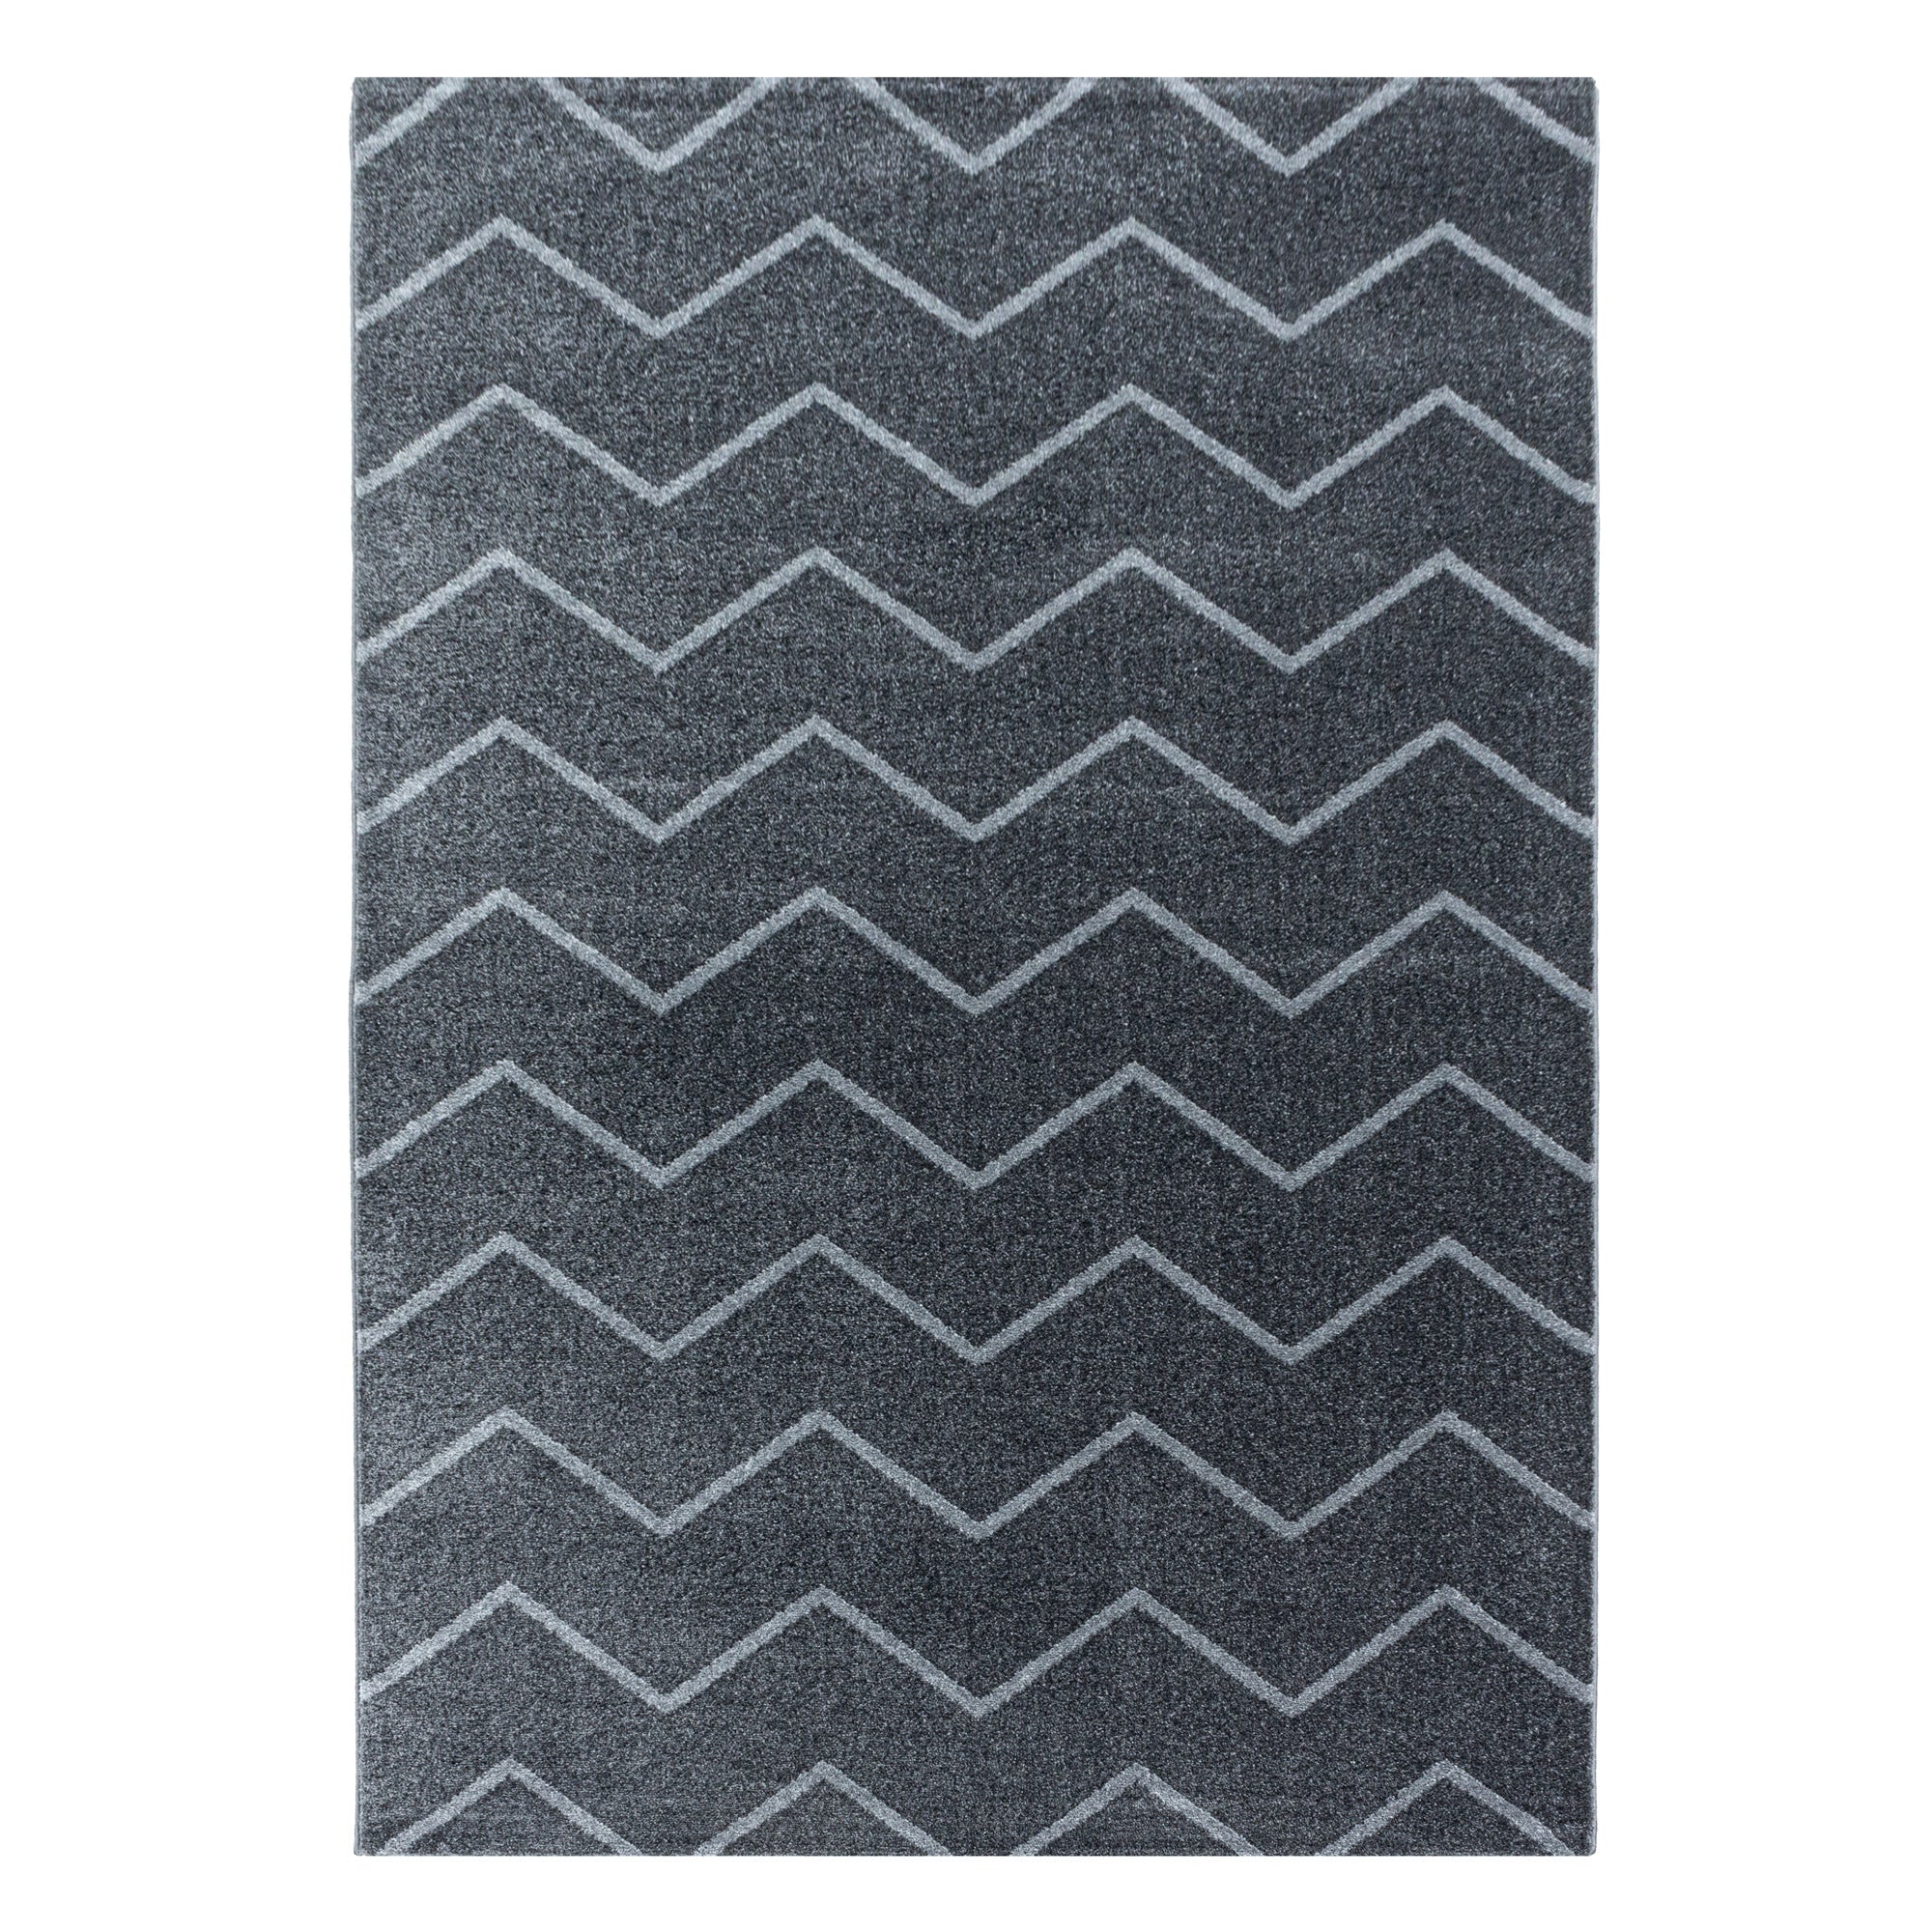 Kurzflor Teppich Grau Wellen Linien Design Wohnzimmerteppich Kinderteppich